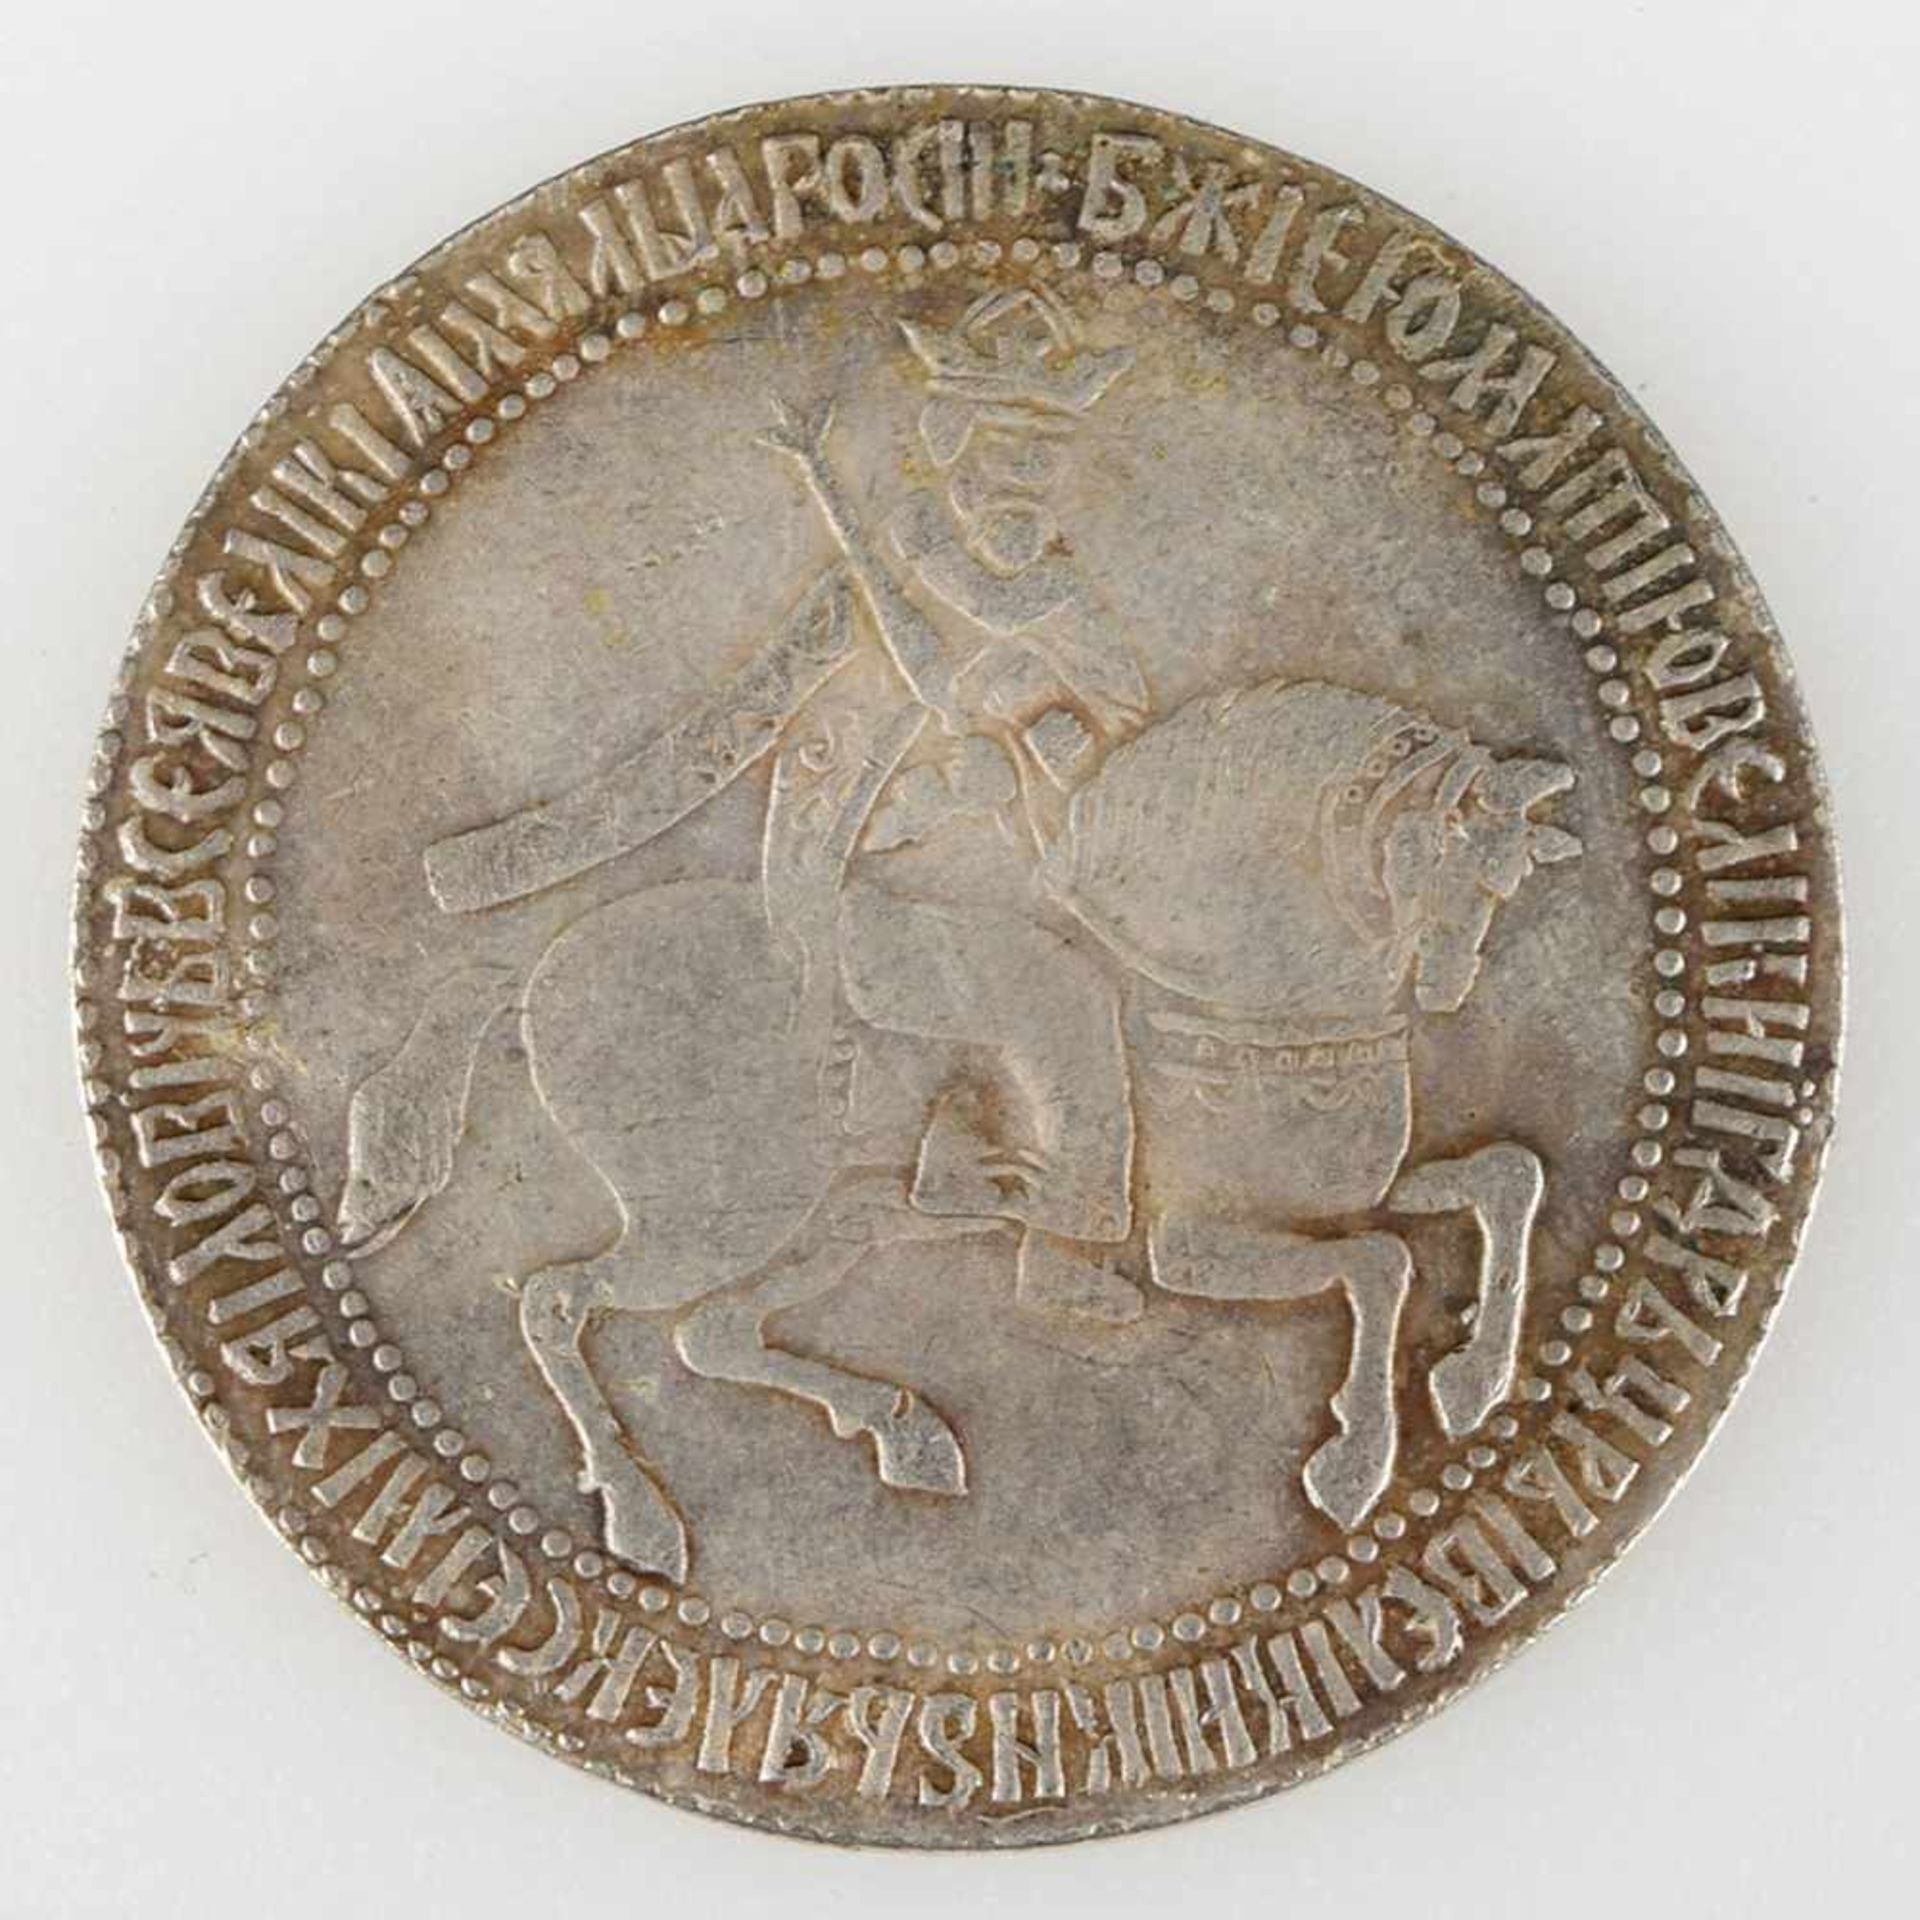 Silbermünze Russland 1654 Rubel, Alexius Michailowitsch (1645-1676), av. reitender Zar mit Zepter - Bild 2 aus 3